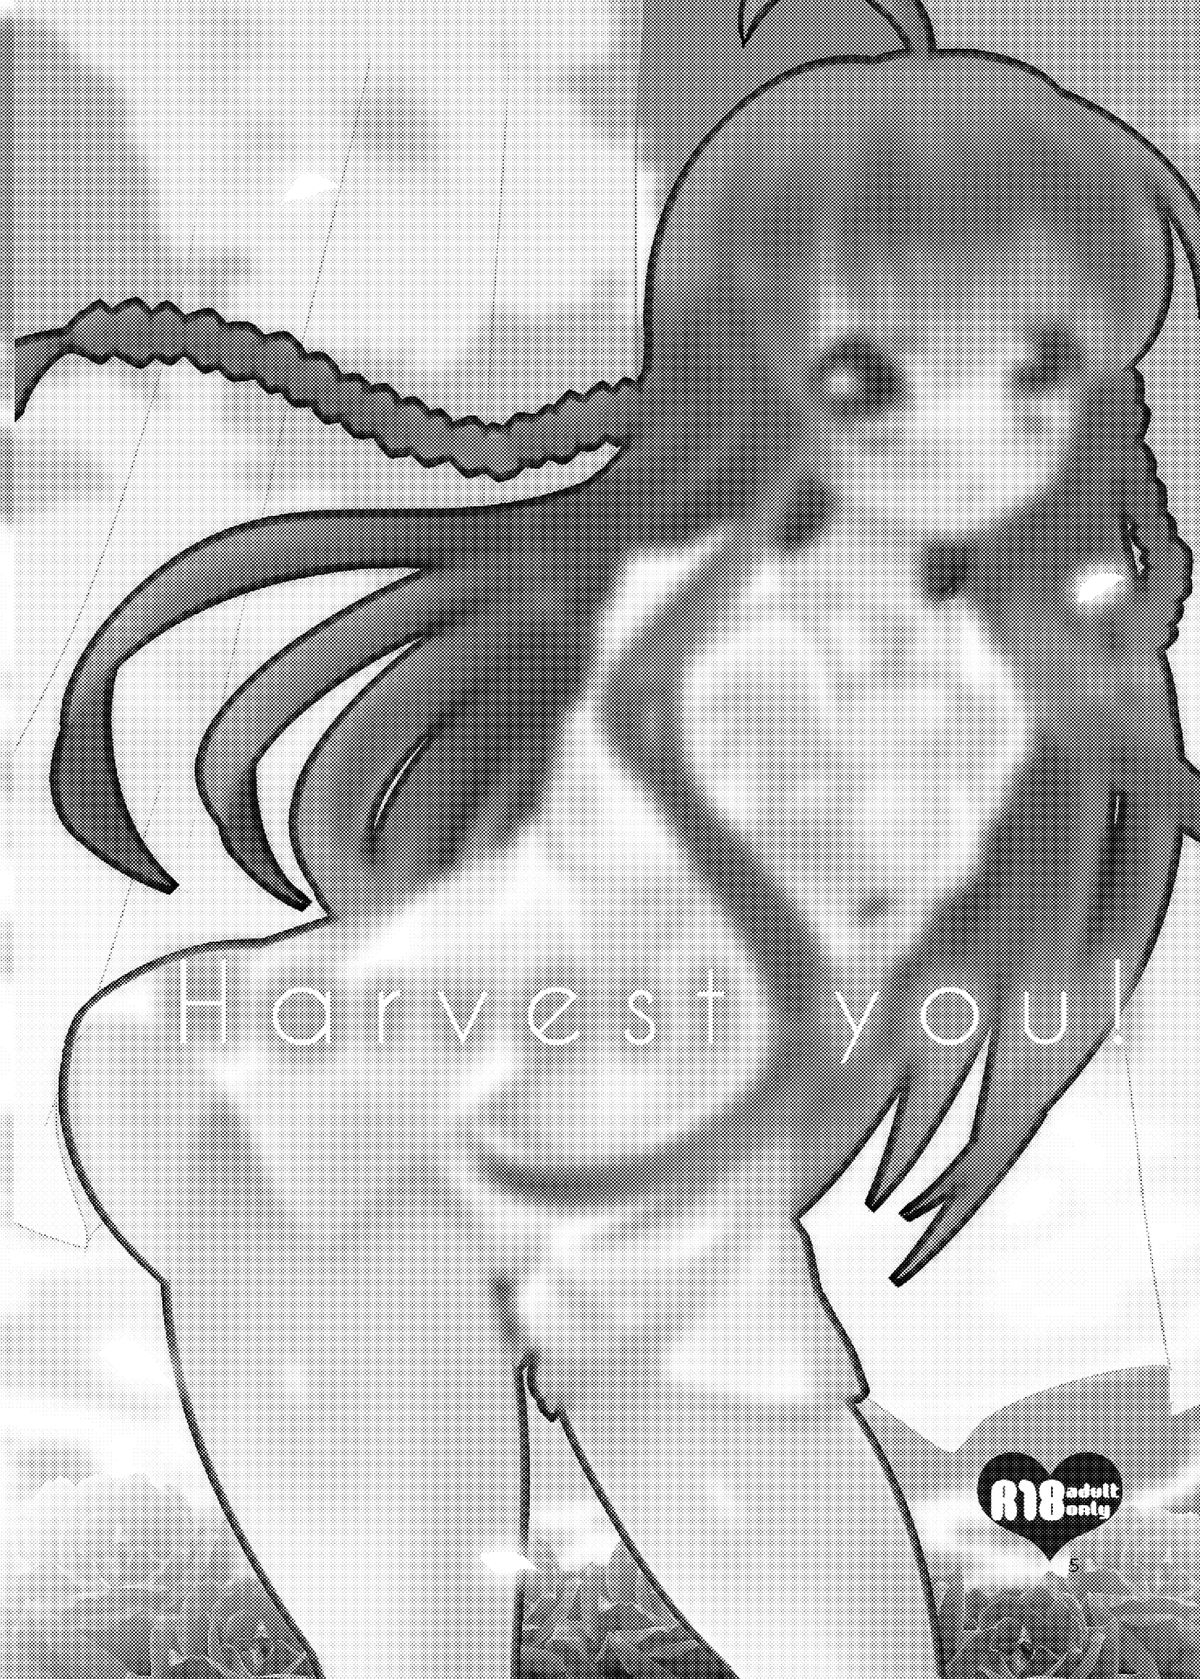 [スライム企画 (栗柚クリュー)] Harvest you! (Rewrite) [DL版]